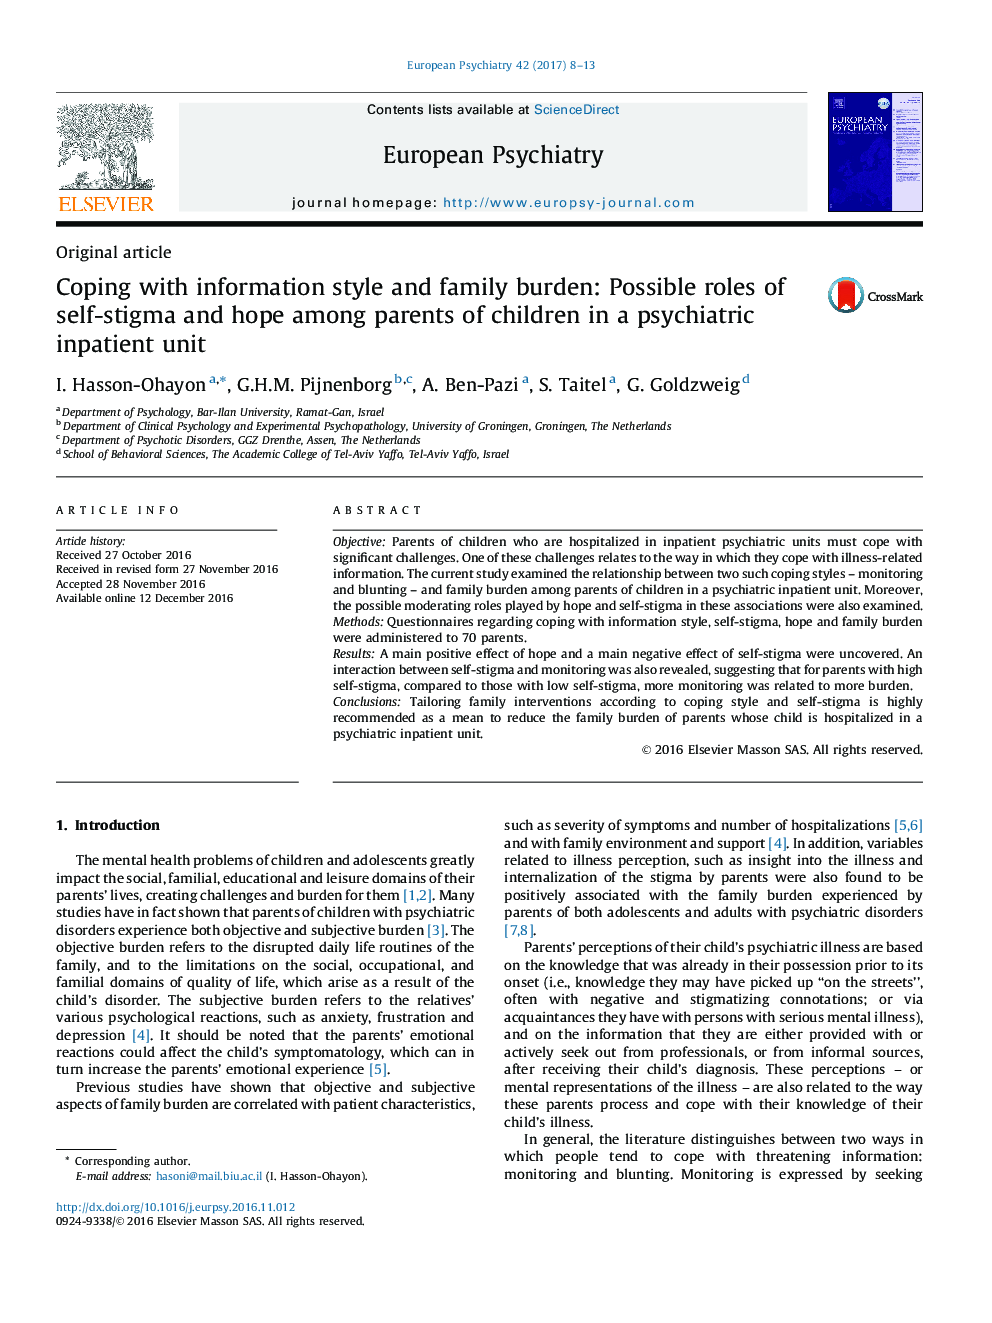 مقاله اصلی کپی کردن با سبک اطلاعات و باروری خانواده: نقش احتمالی خودمحور و امید در میان والدین کودکان در یک واحد سرپایی روانپزشکی 